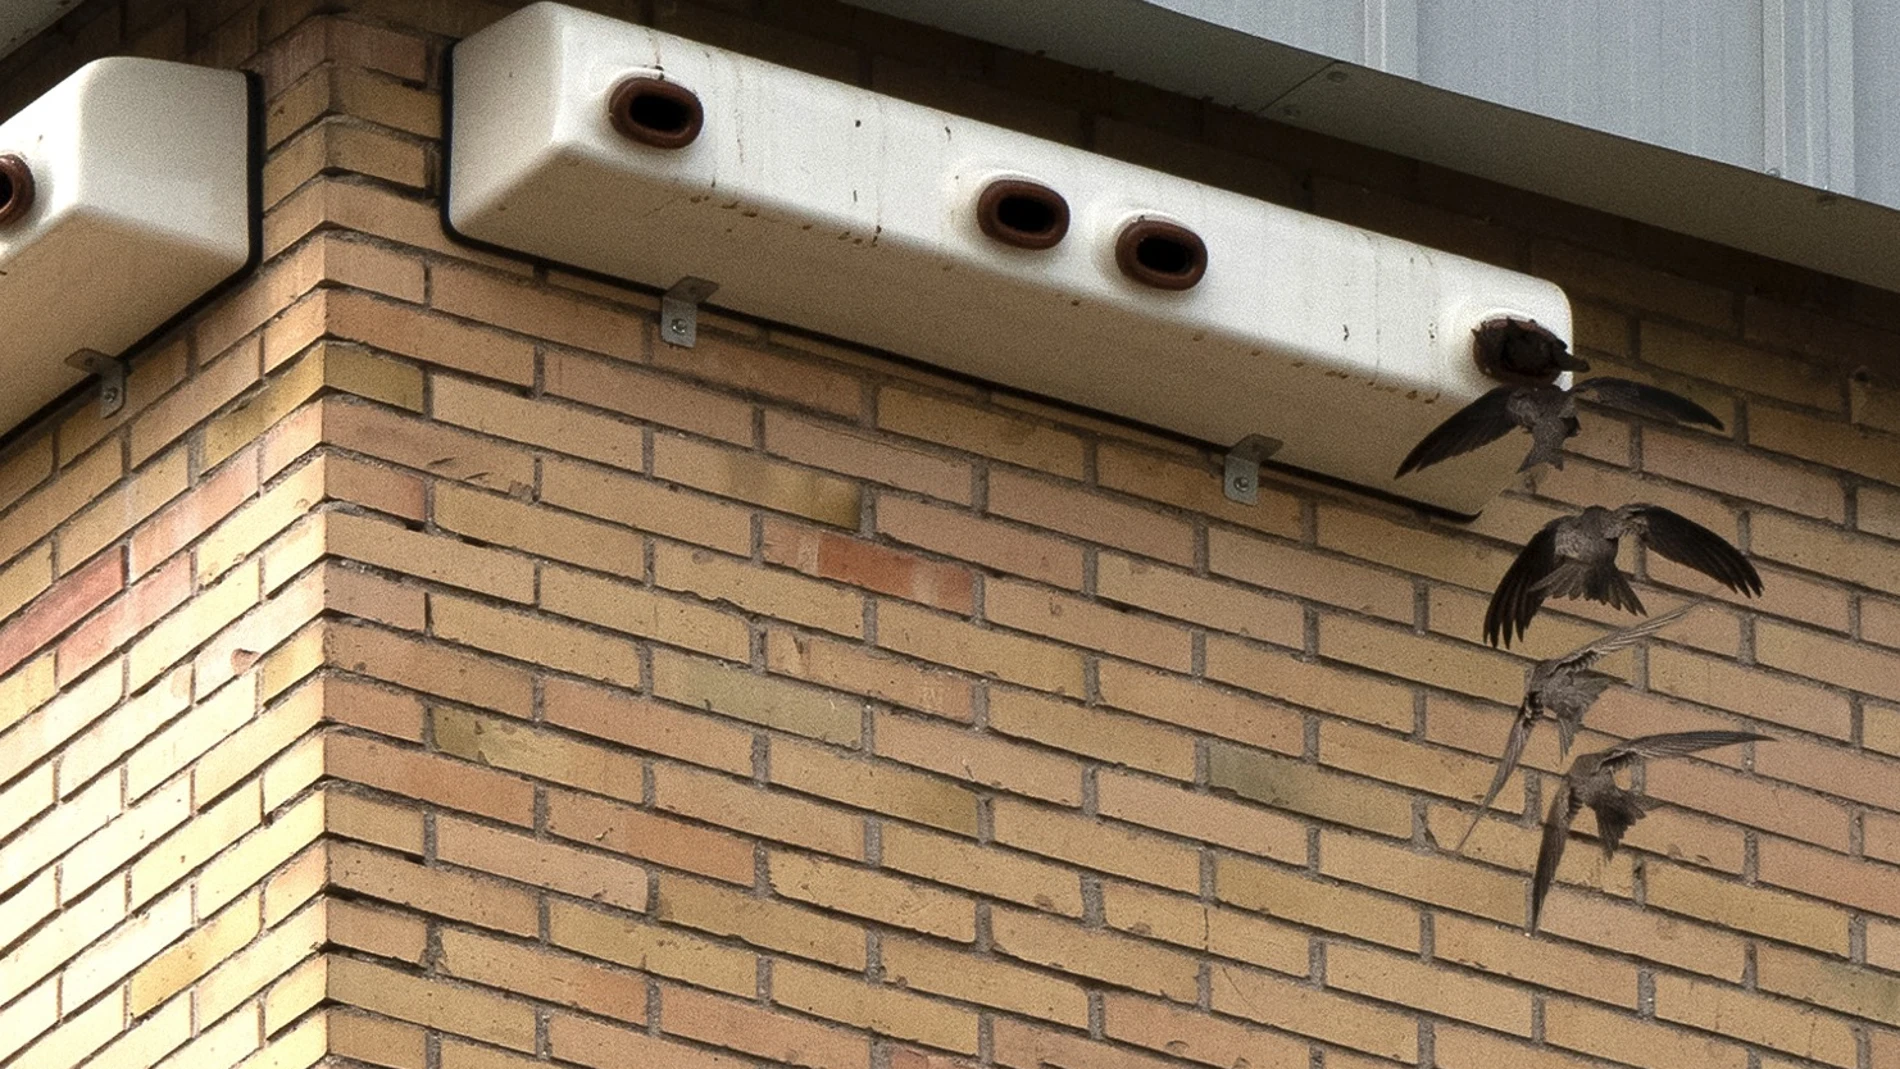 Cajas nido para vencejos colocadas en una fachada tras la restauración del tejado en el que estas aves tenían refugios, en Orcasitas (Madrid) Autoría: Luis Martínez